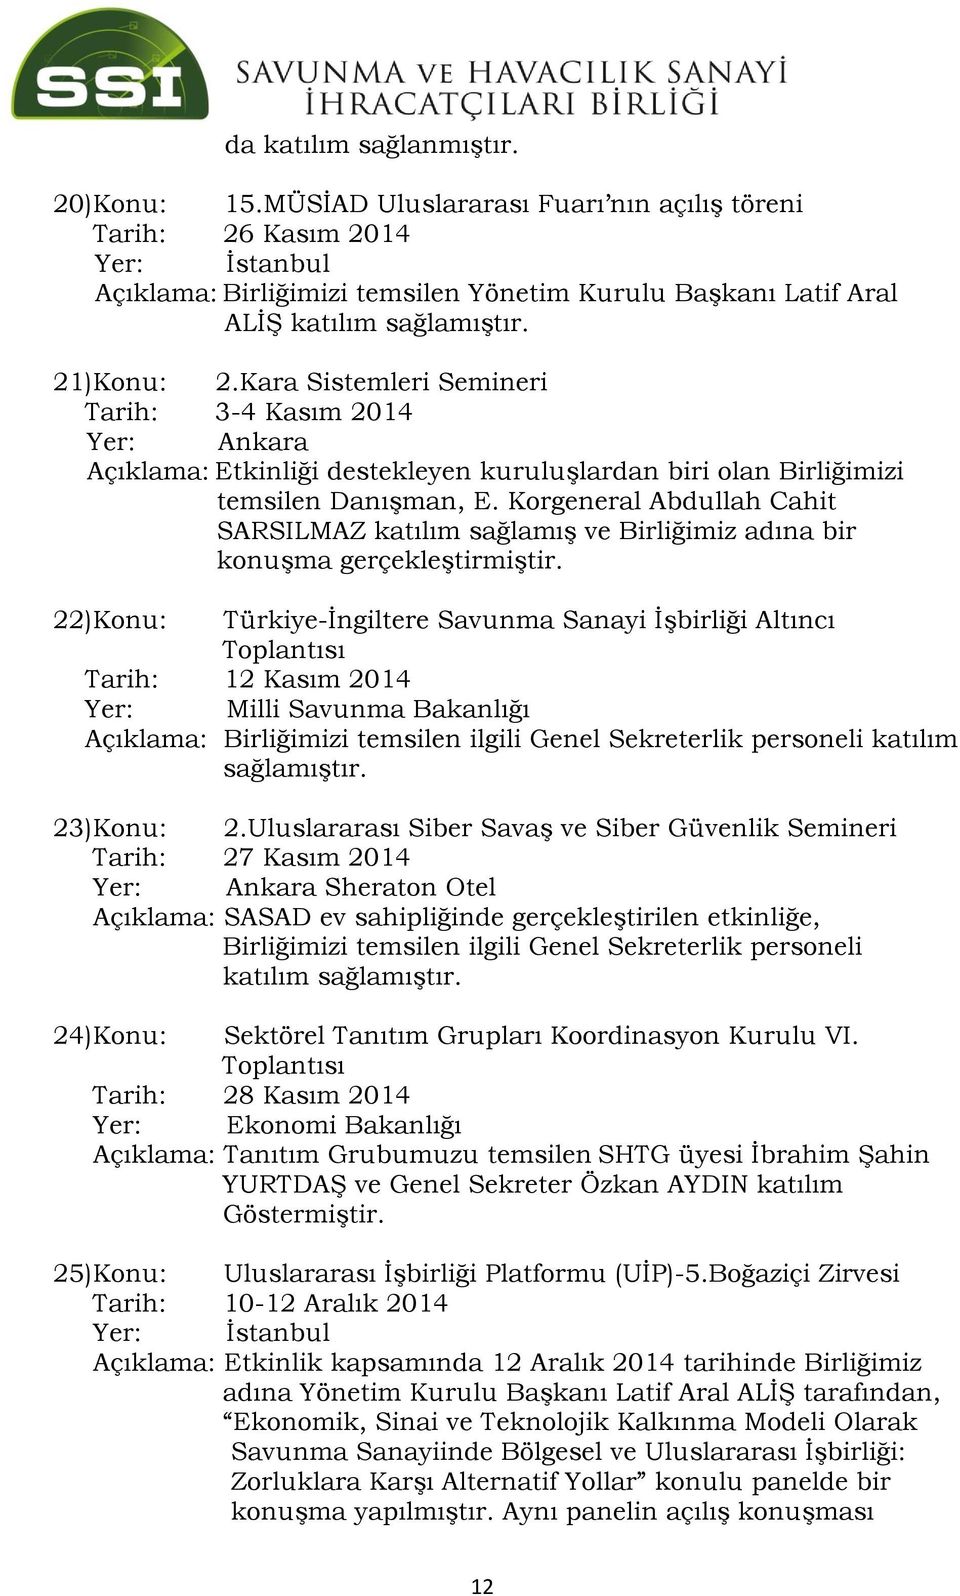 Kara Sistemleri Semineri Tarih: 3-4 Kasım 2014 Yer: Ankara Açıklama: Etkinliği destekleyen kuruluşlardan biri olan Birliğimizi temsilen Danışman, E.